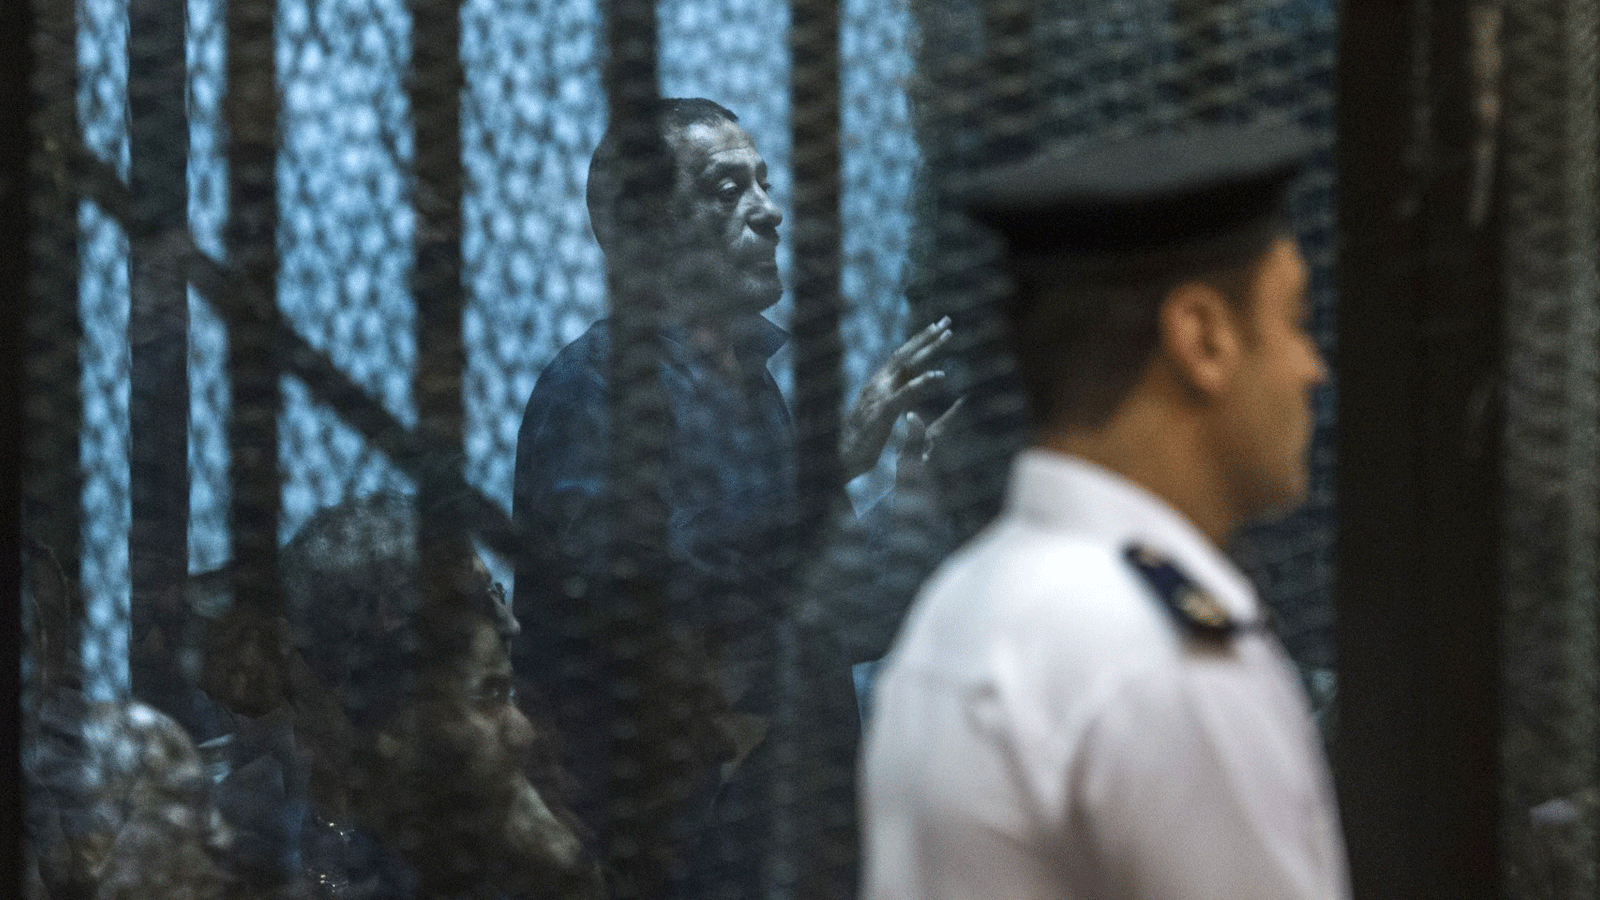  القيادي في جماعة الإخوان المسلمين أحمد أبو بركة خلف قفص المدعى عليه أثناء المحاكمة بتهمة إهانة القضاء مع 25 متهمًا آخر. القاهرة 23 أيار/ مايو 2015